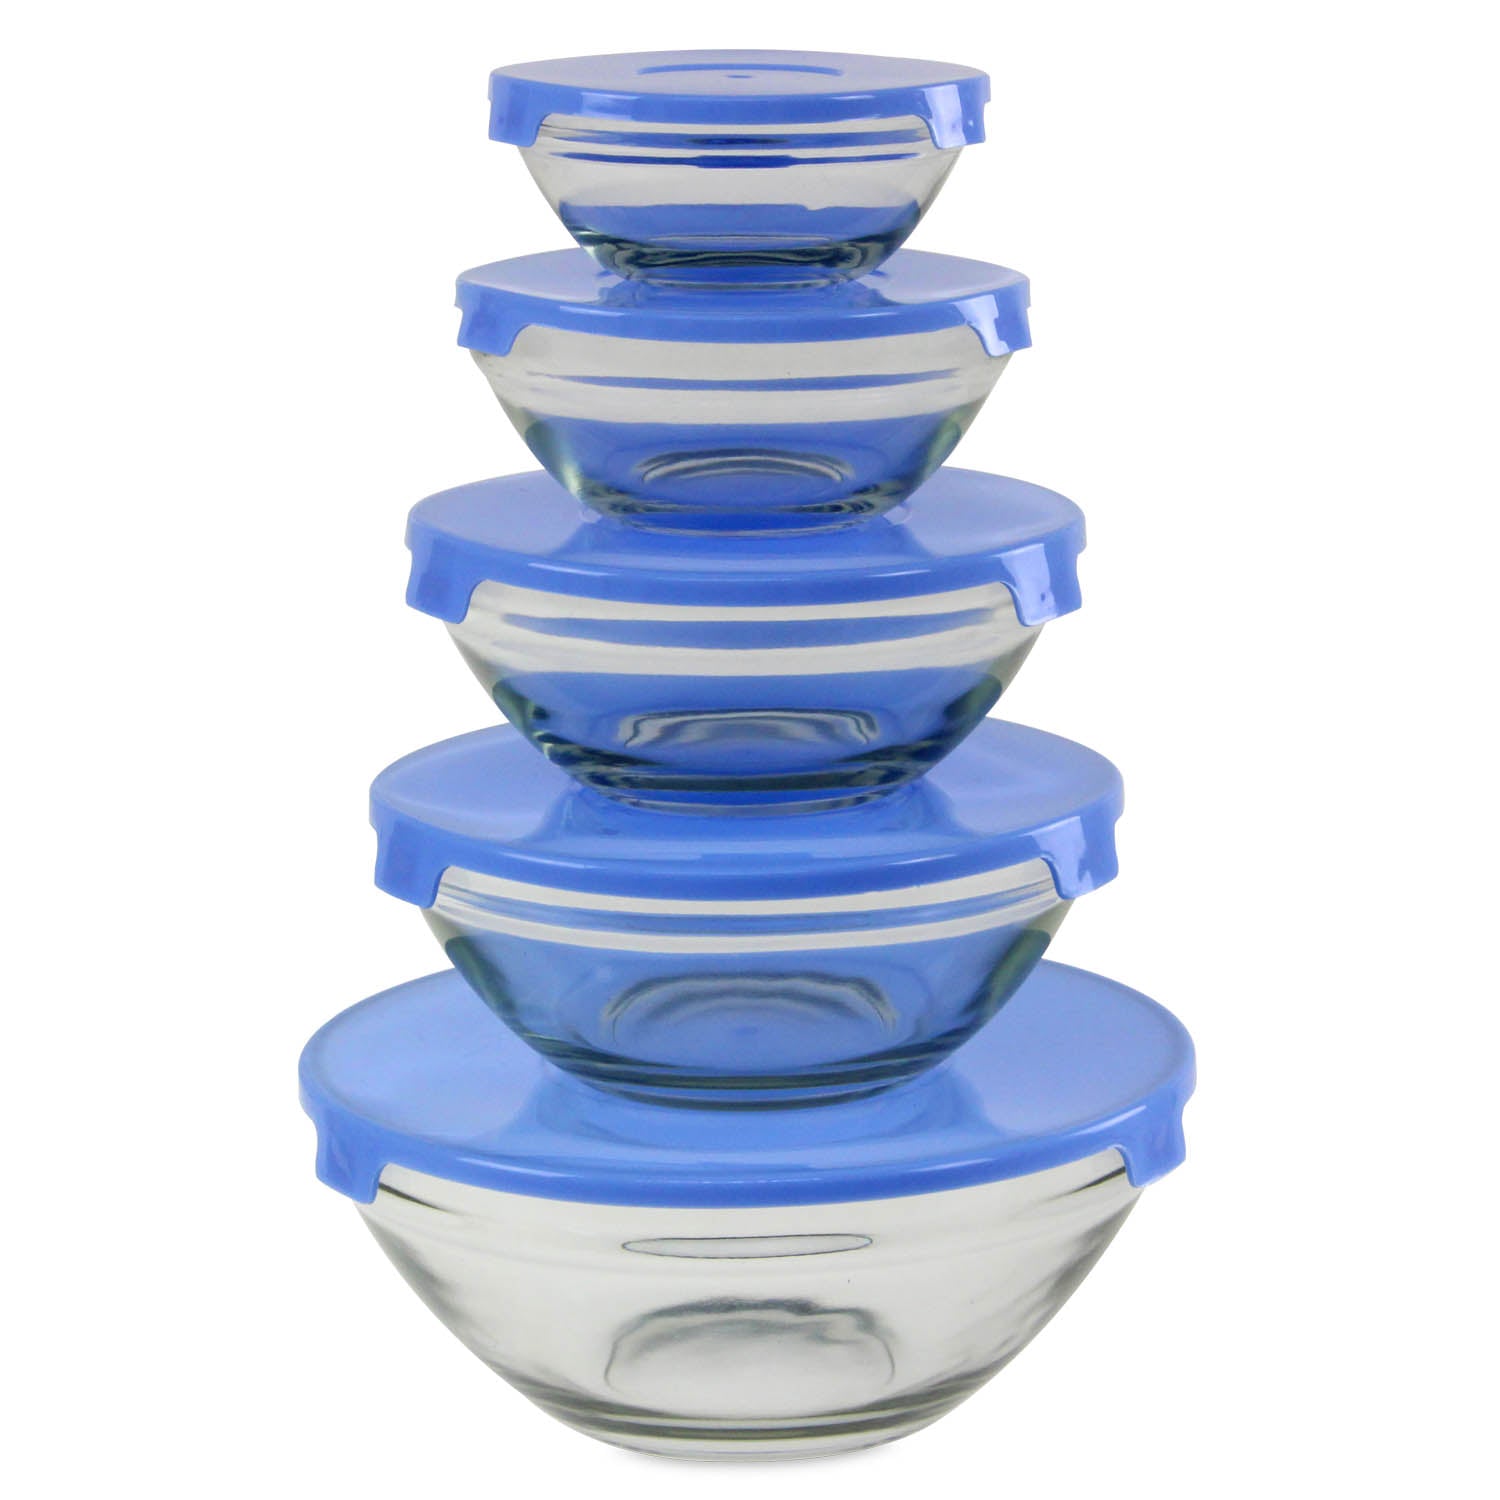 5pcs Storage Bowls with Blue Plastic Lid